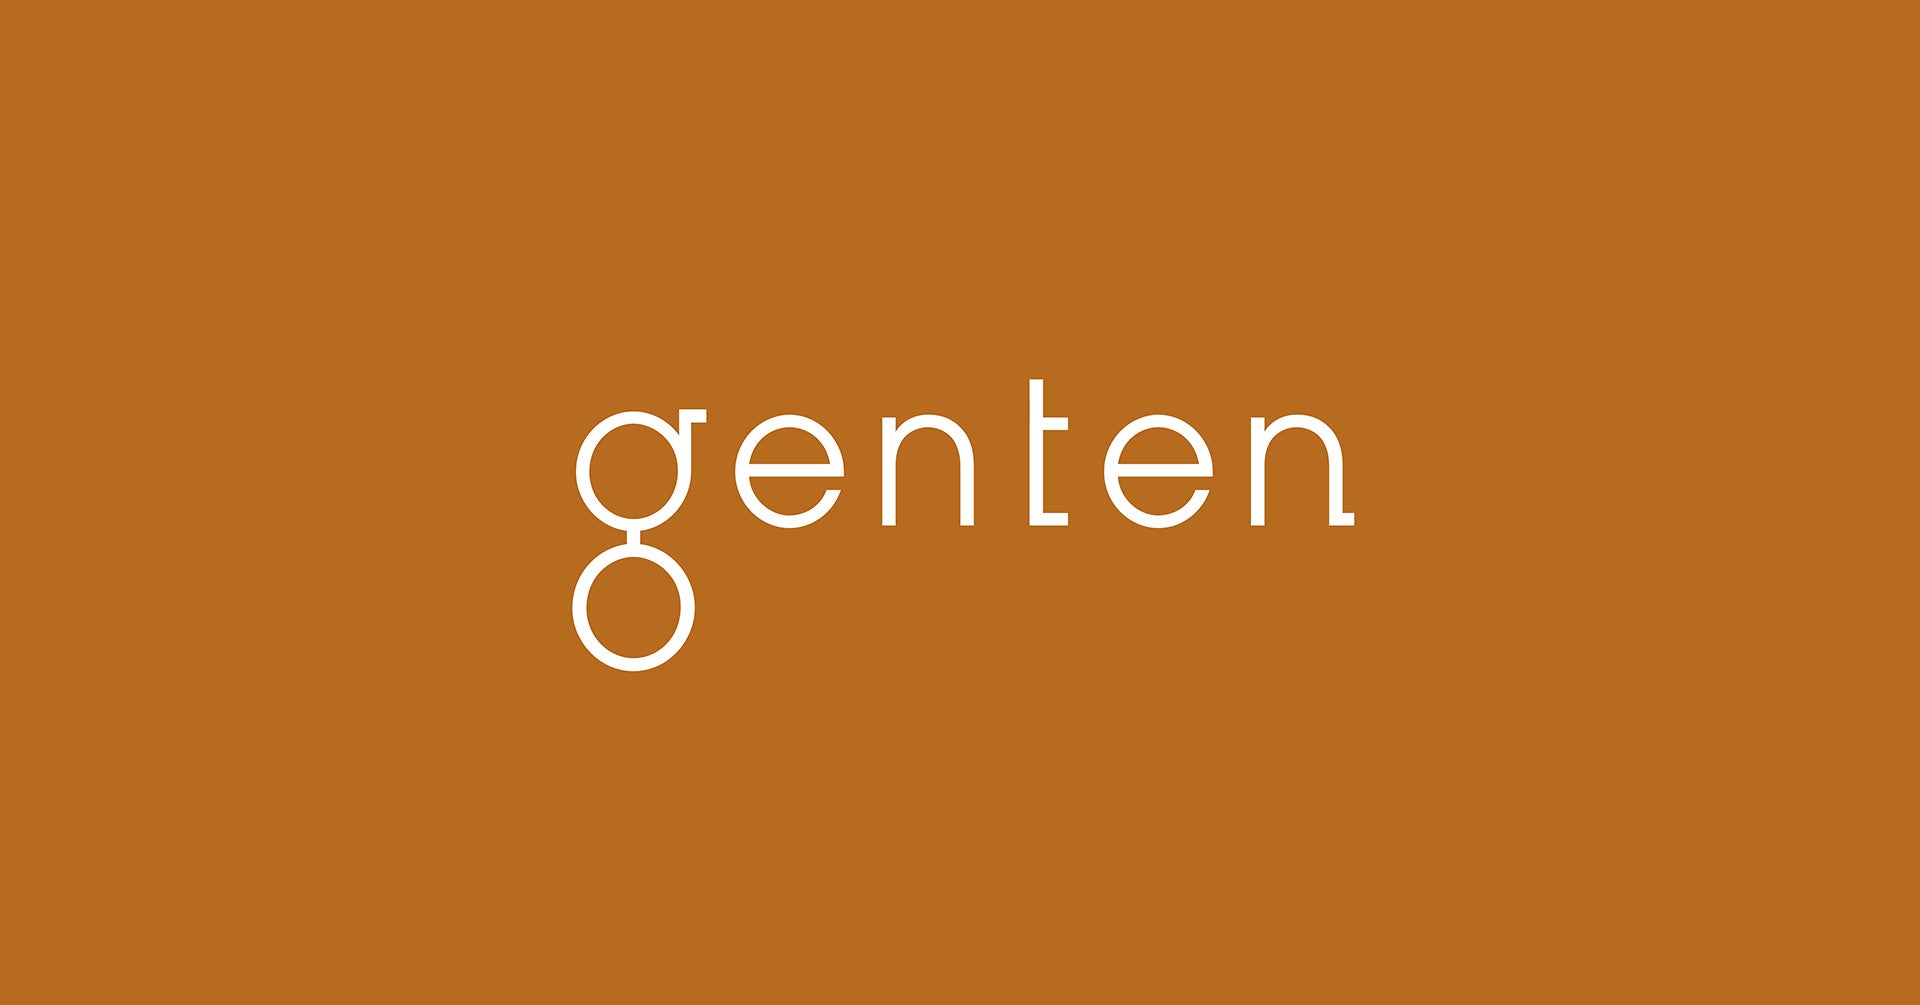 革製品ブランド「genten」が西宮阪急2階の店舗をリニューアルオープン！＜3月20日（水・祝）＞